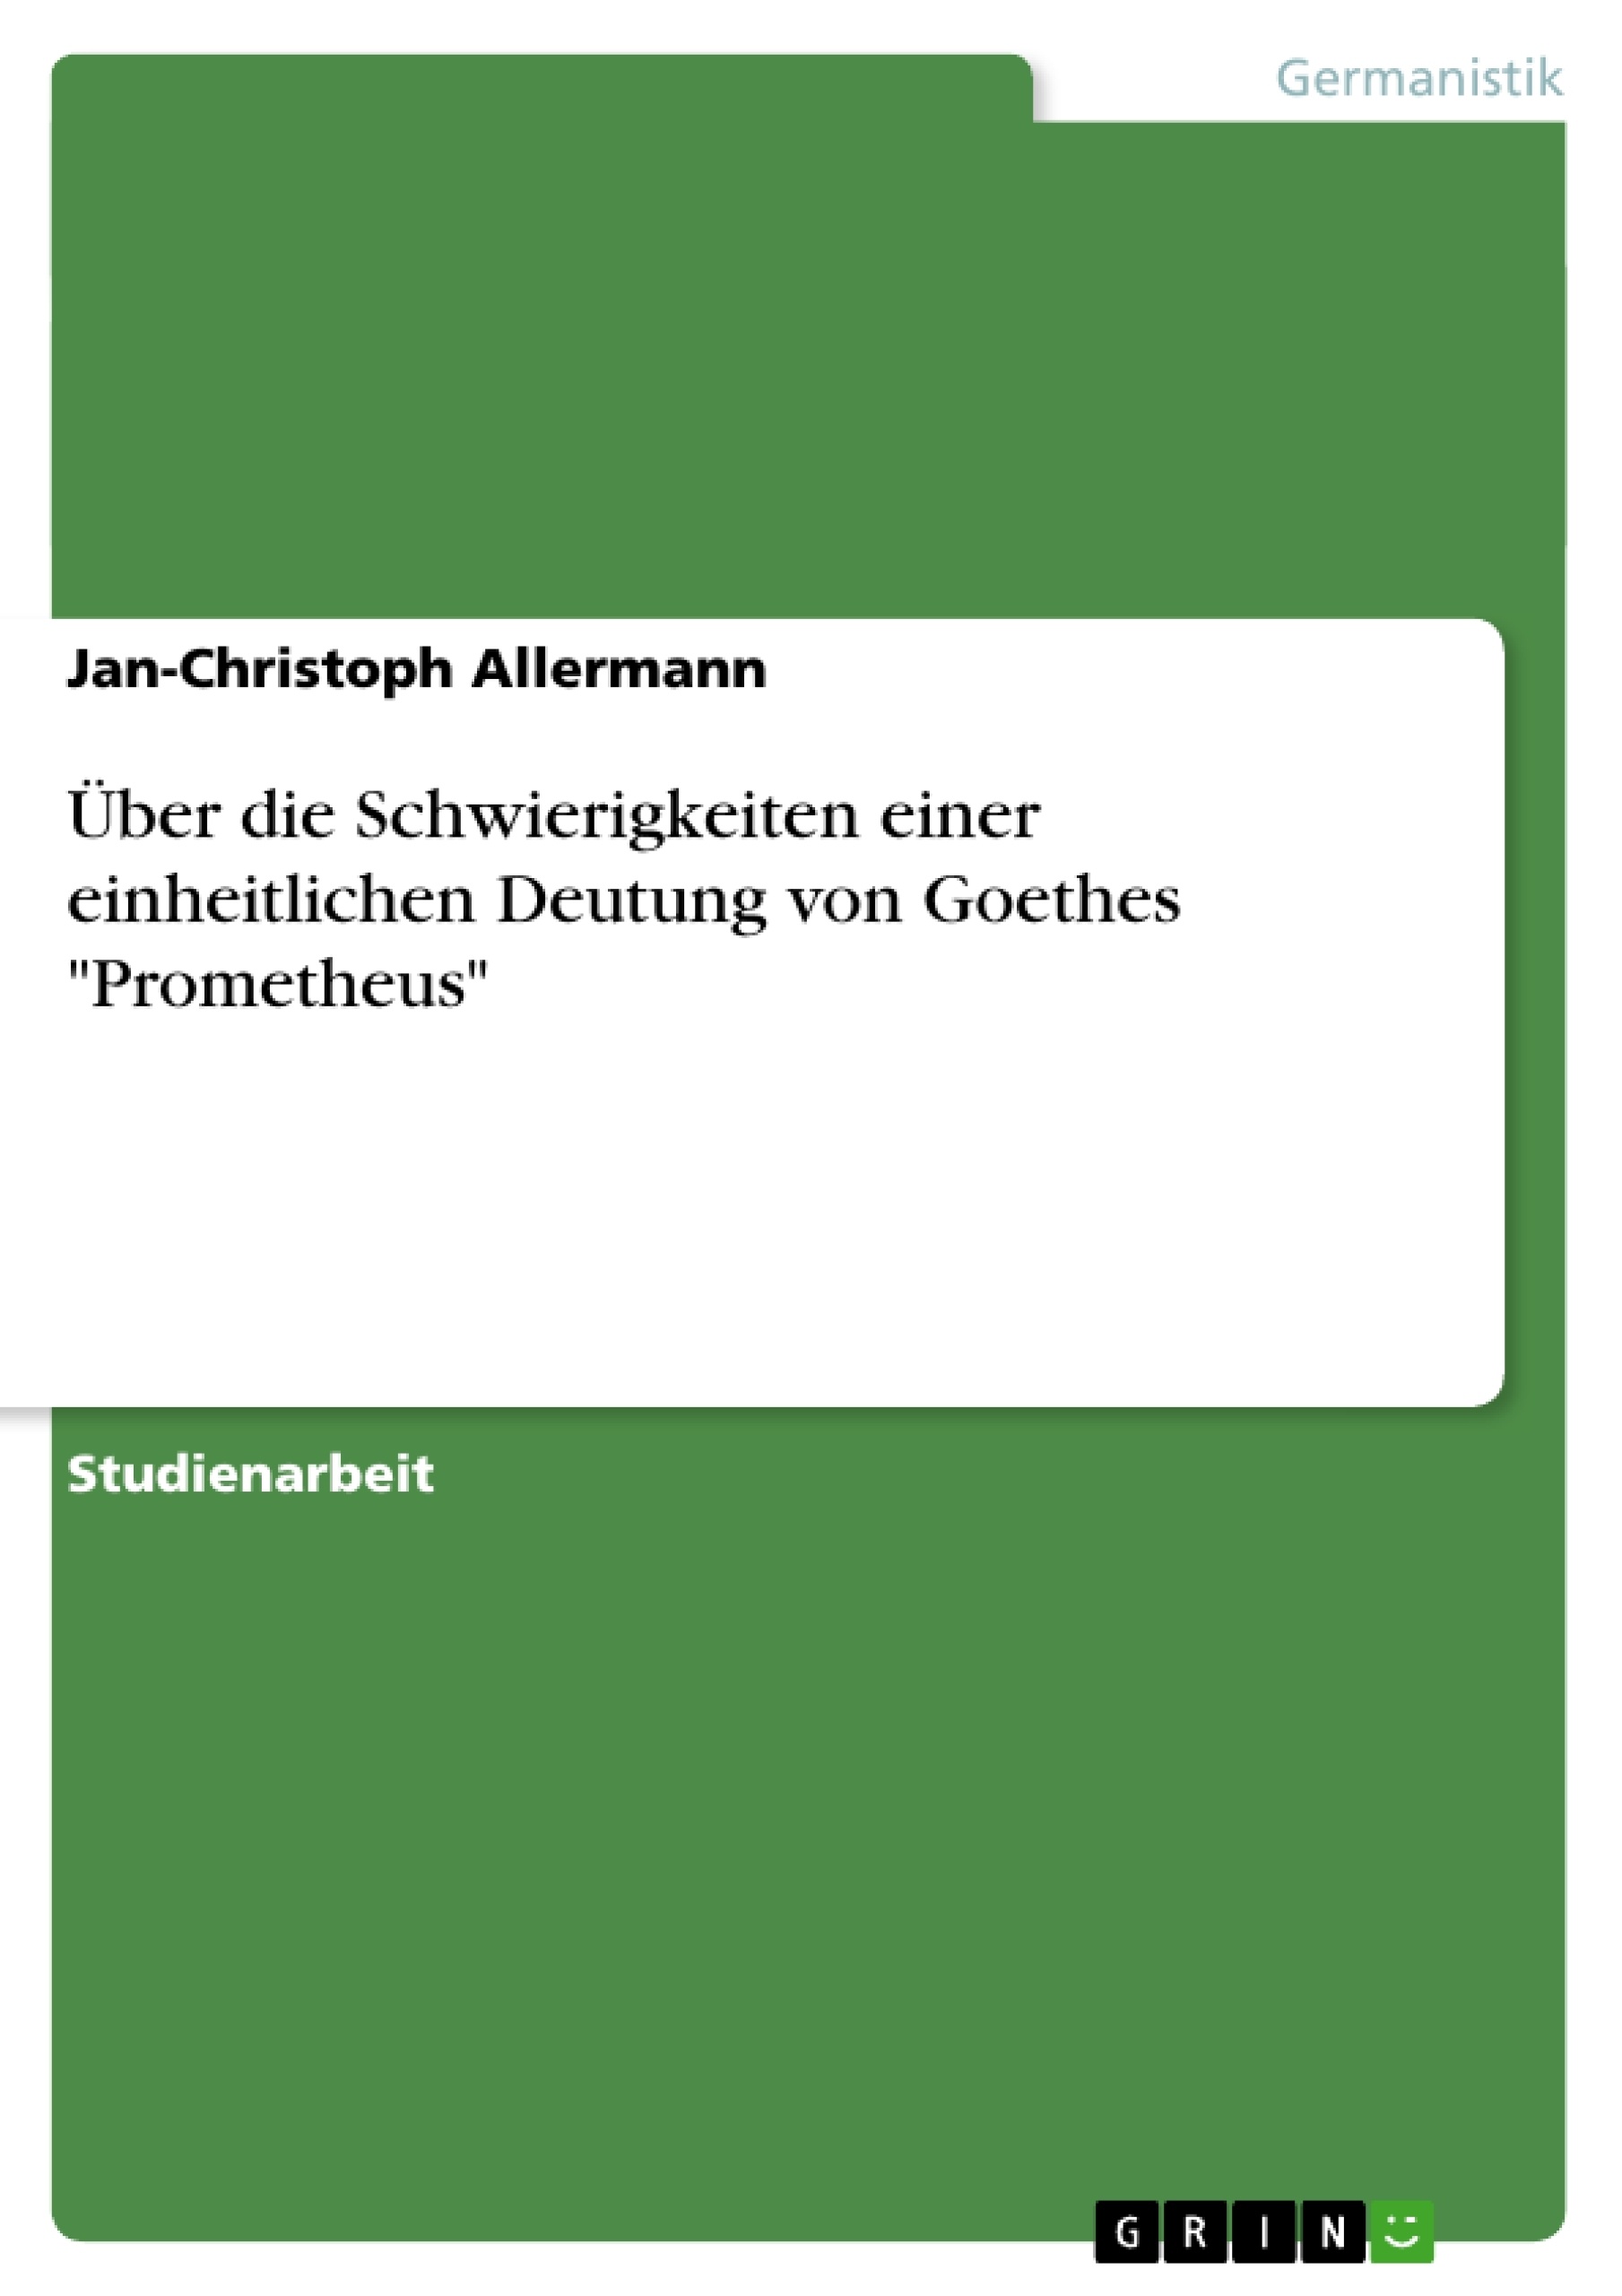 Titel: Über die Schwierigkeiten einer einheitlichen Deutung von Goethes "Prometheus"